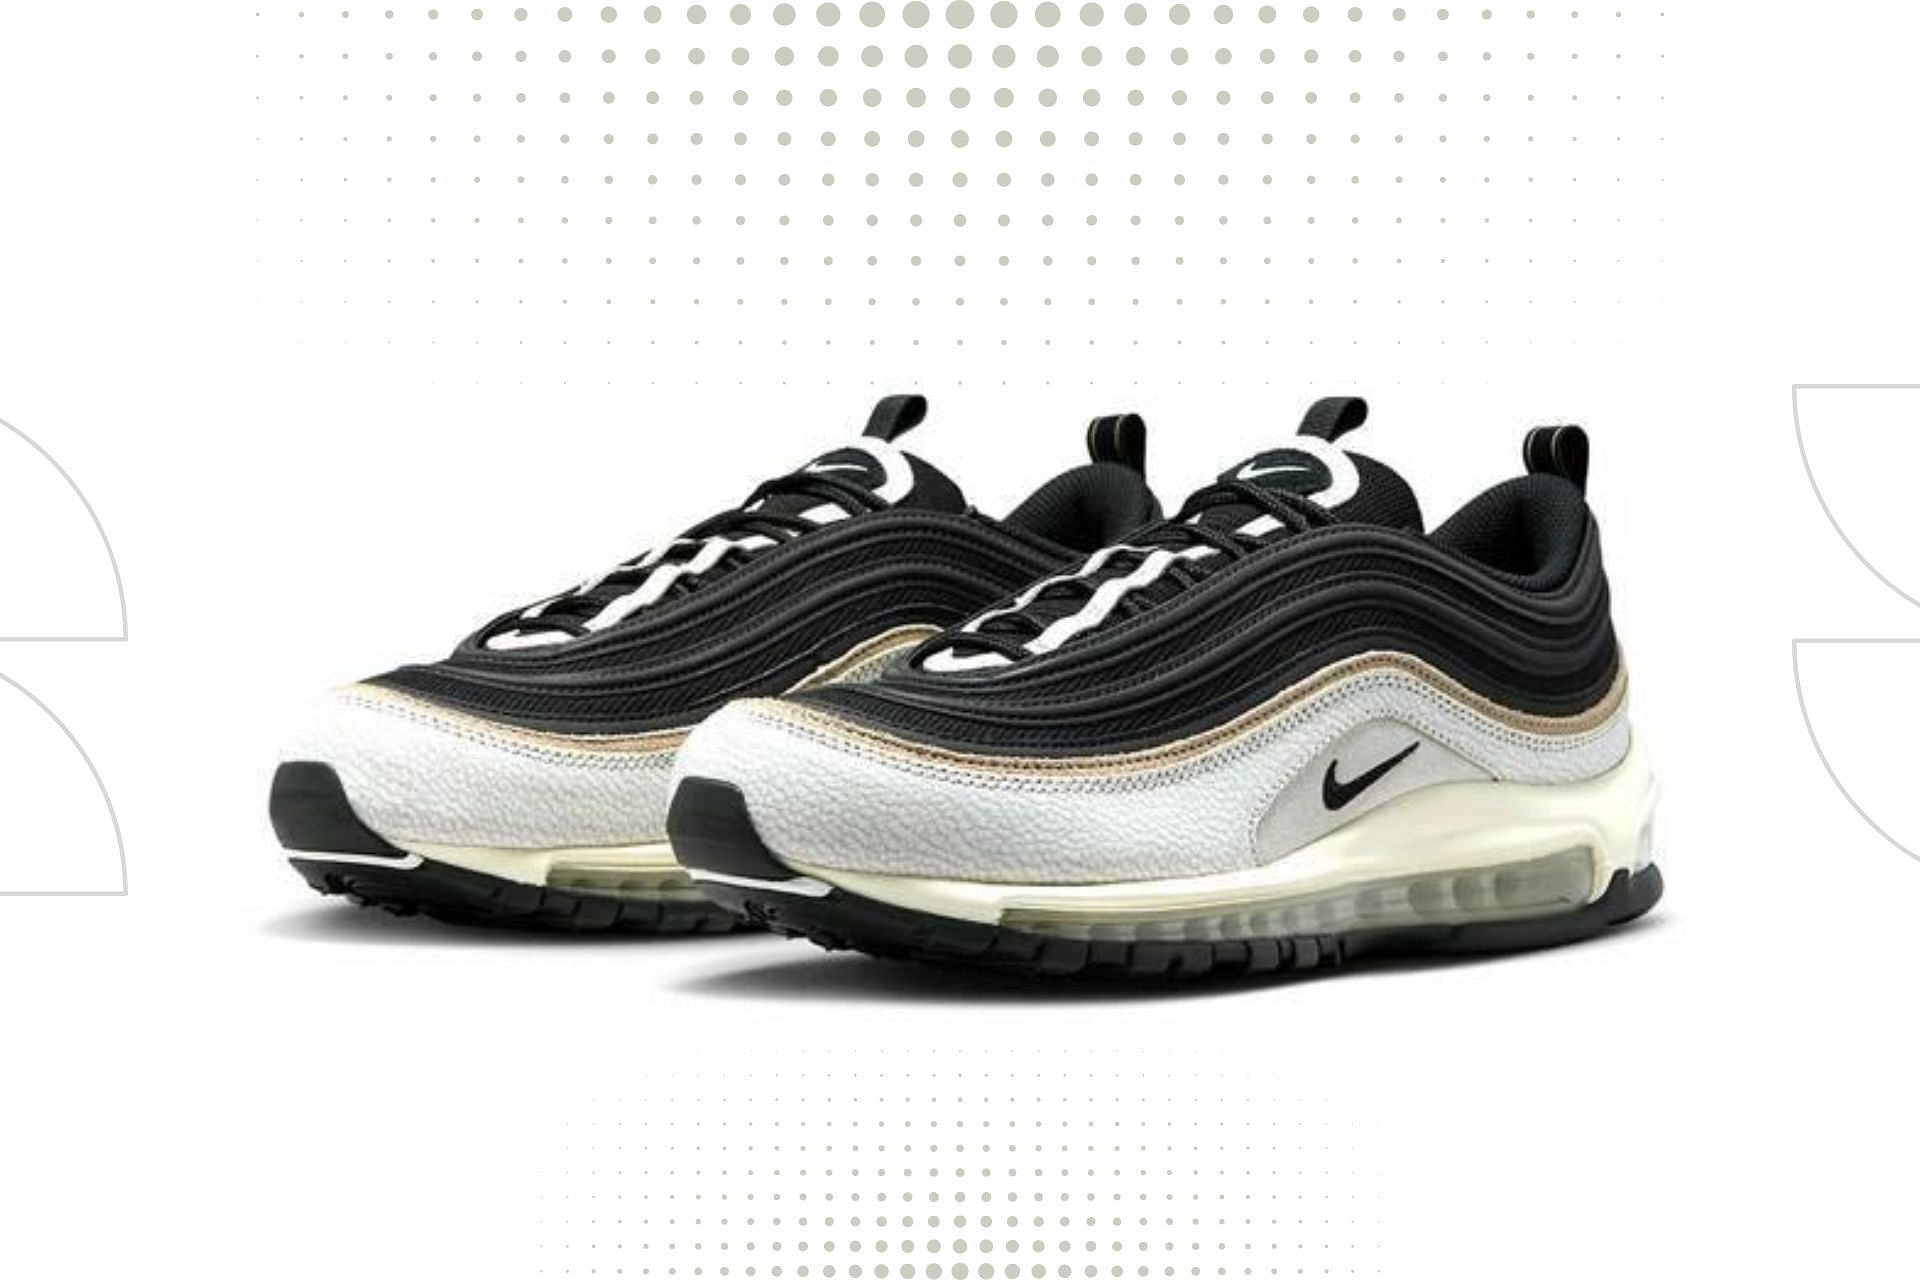 Nike Air Max 97 Black/White shoes (Image via Nike)